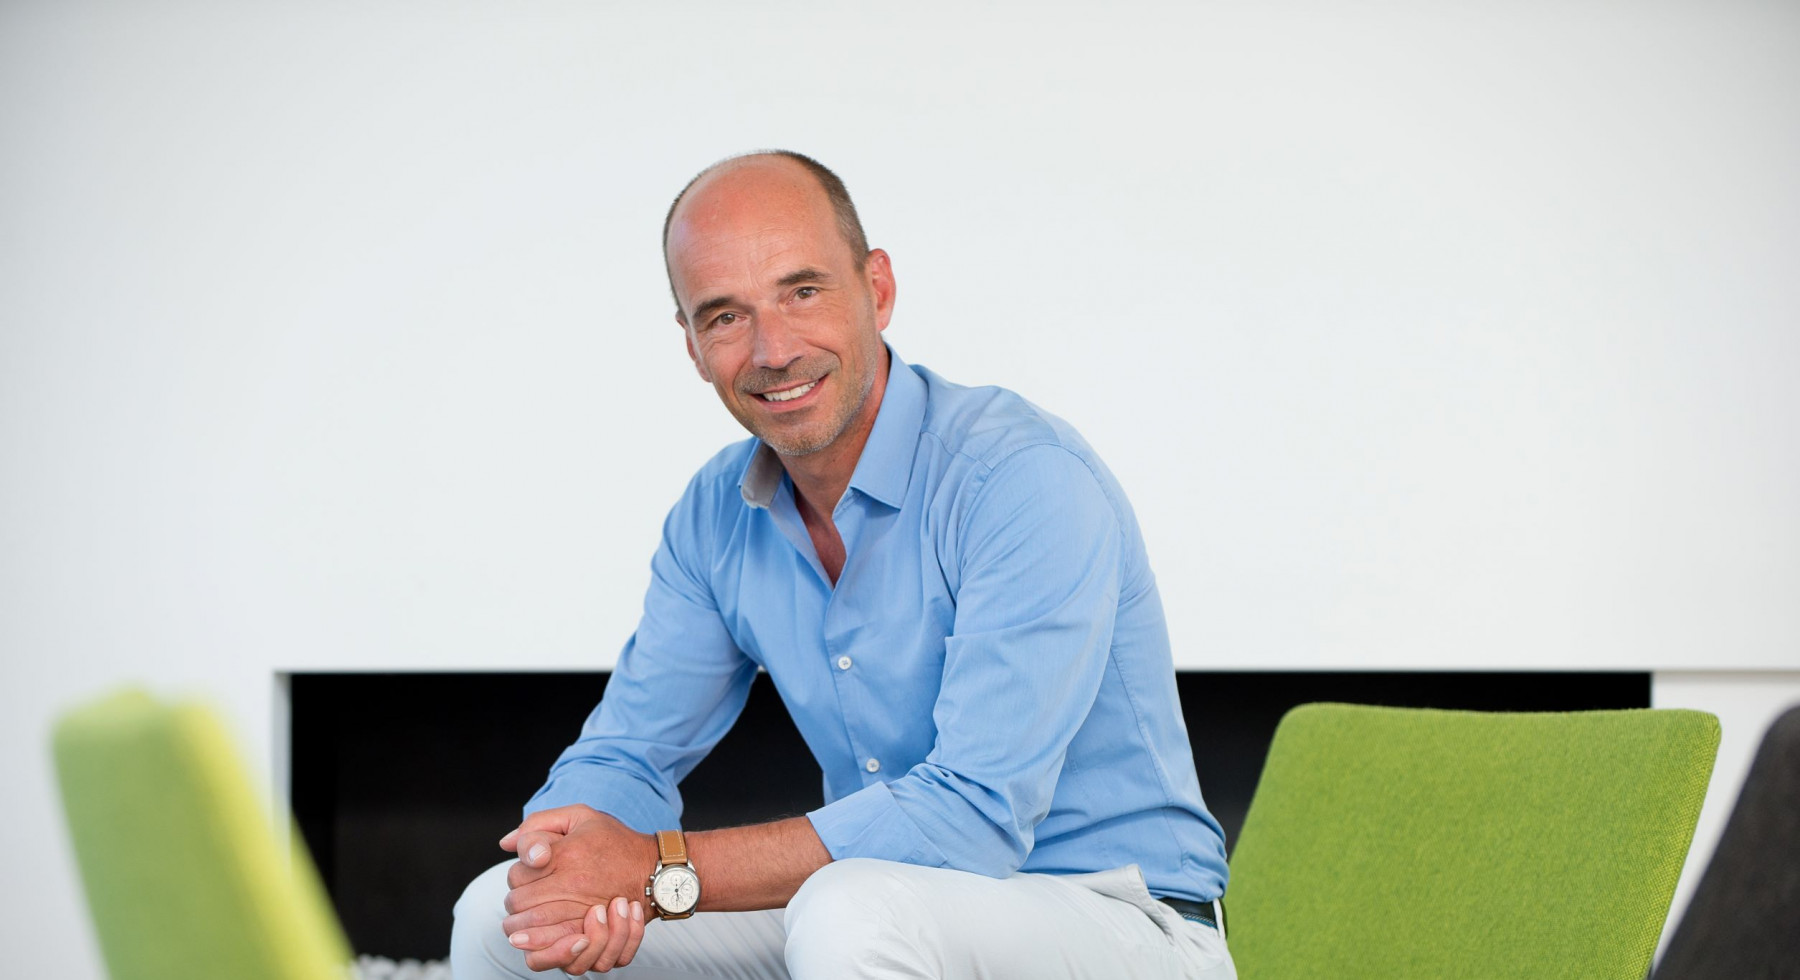 Rolf Sonderegger, CEO Kistler Group